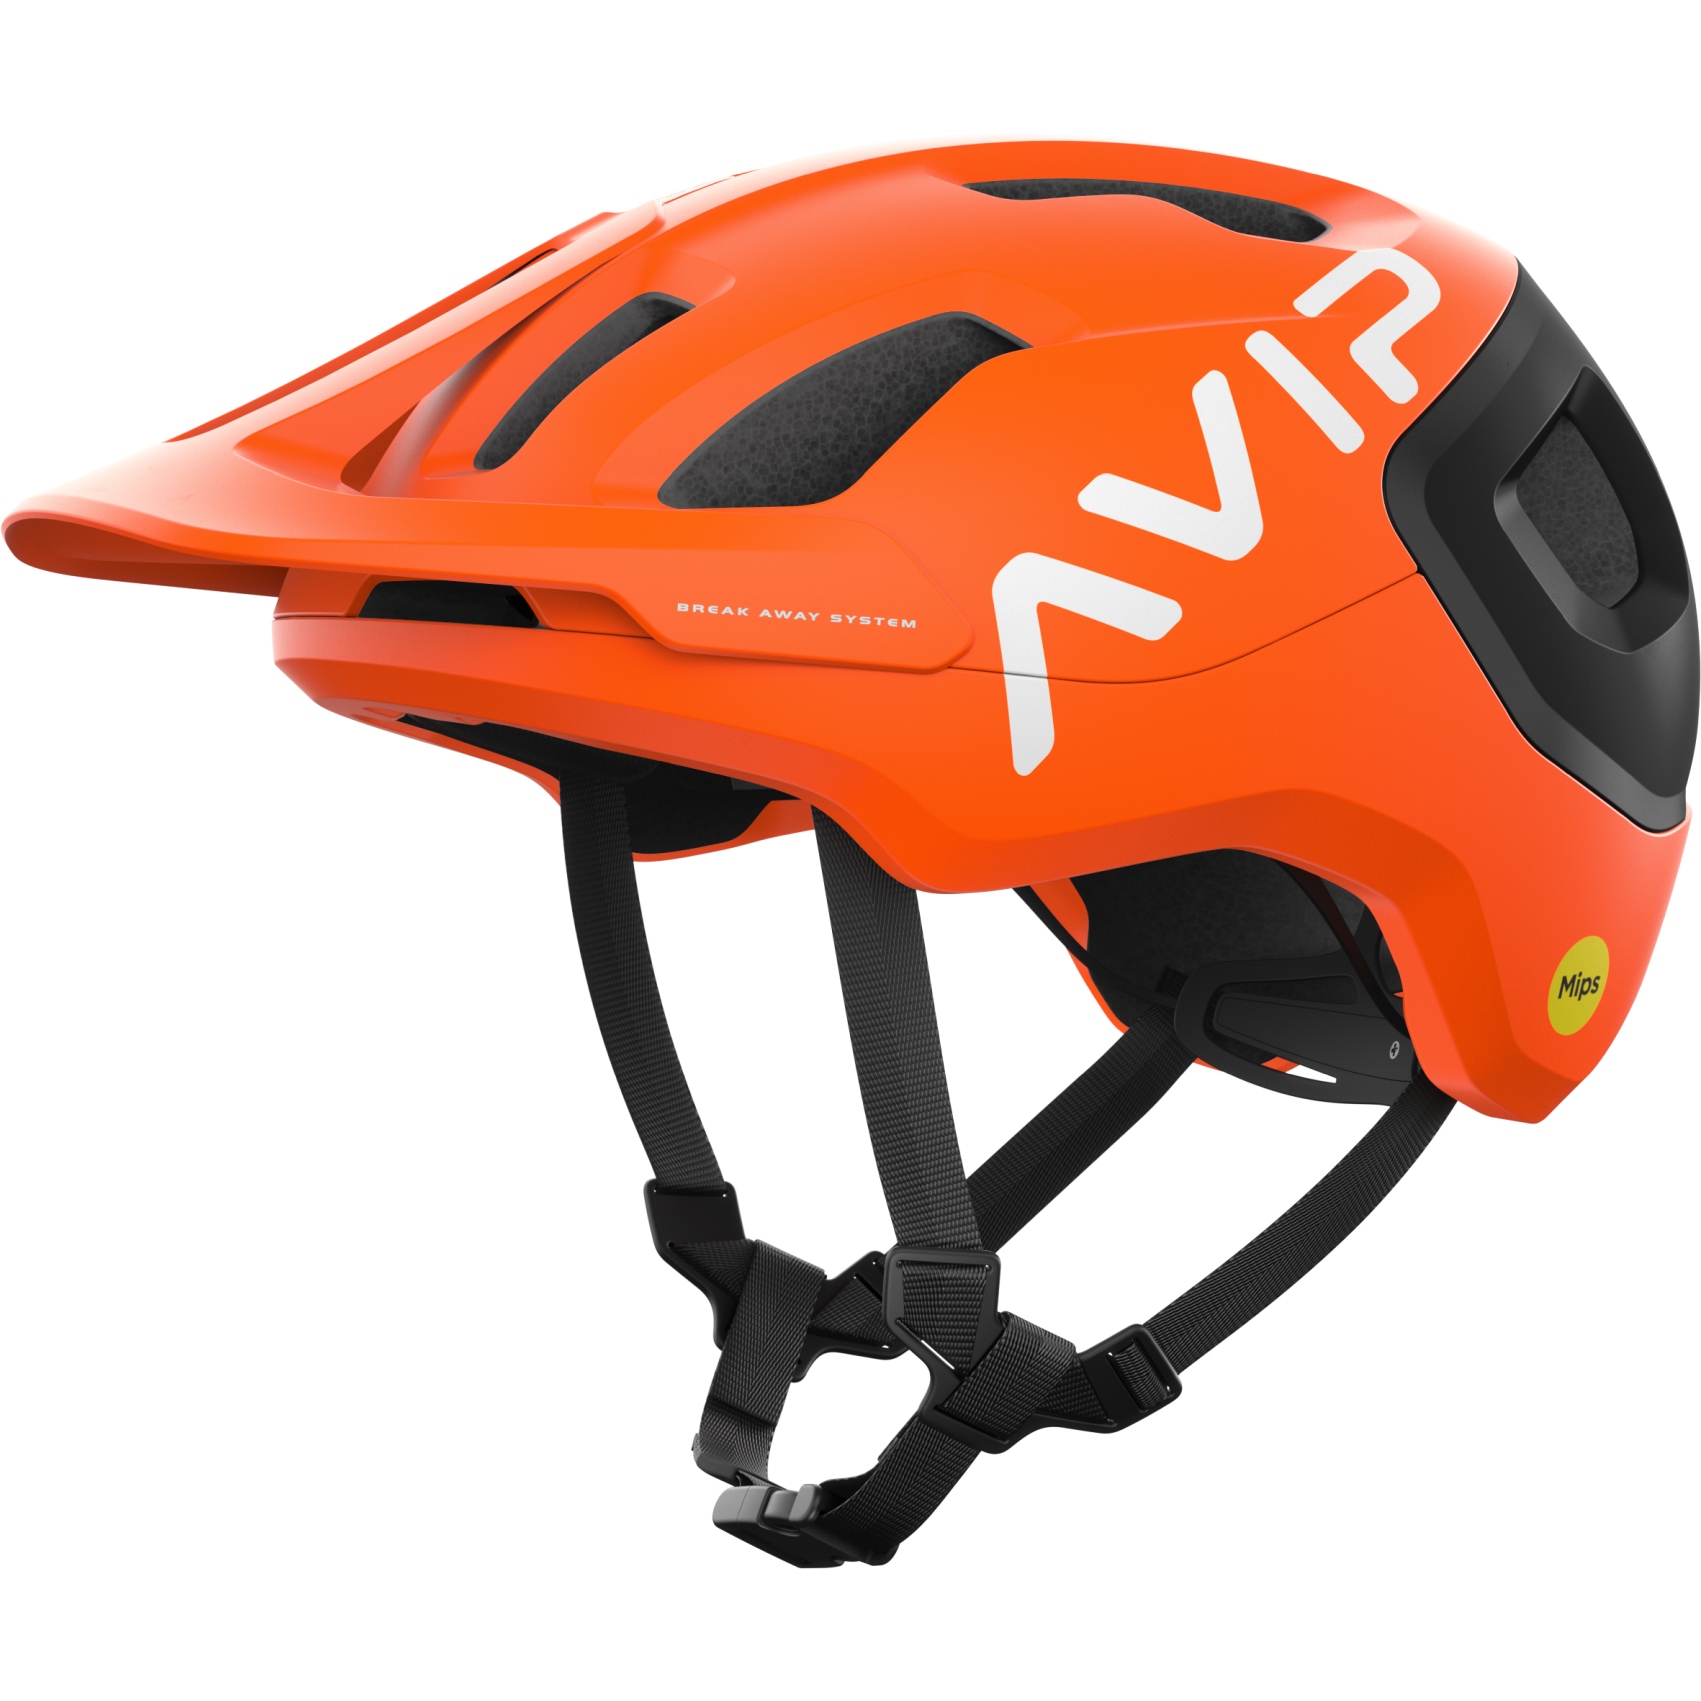 Produktbild von POC Axion Race MIPS Helm - 8375 Fluorescent Orange AVIP/Uranium Black Matt